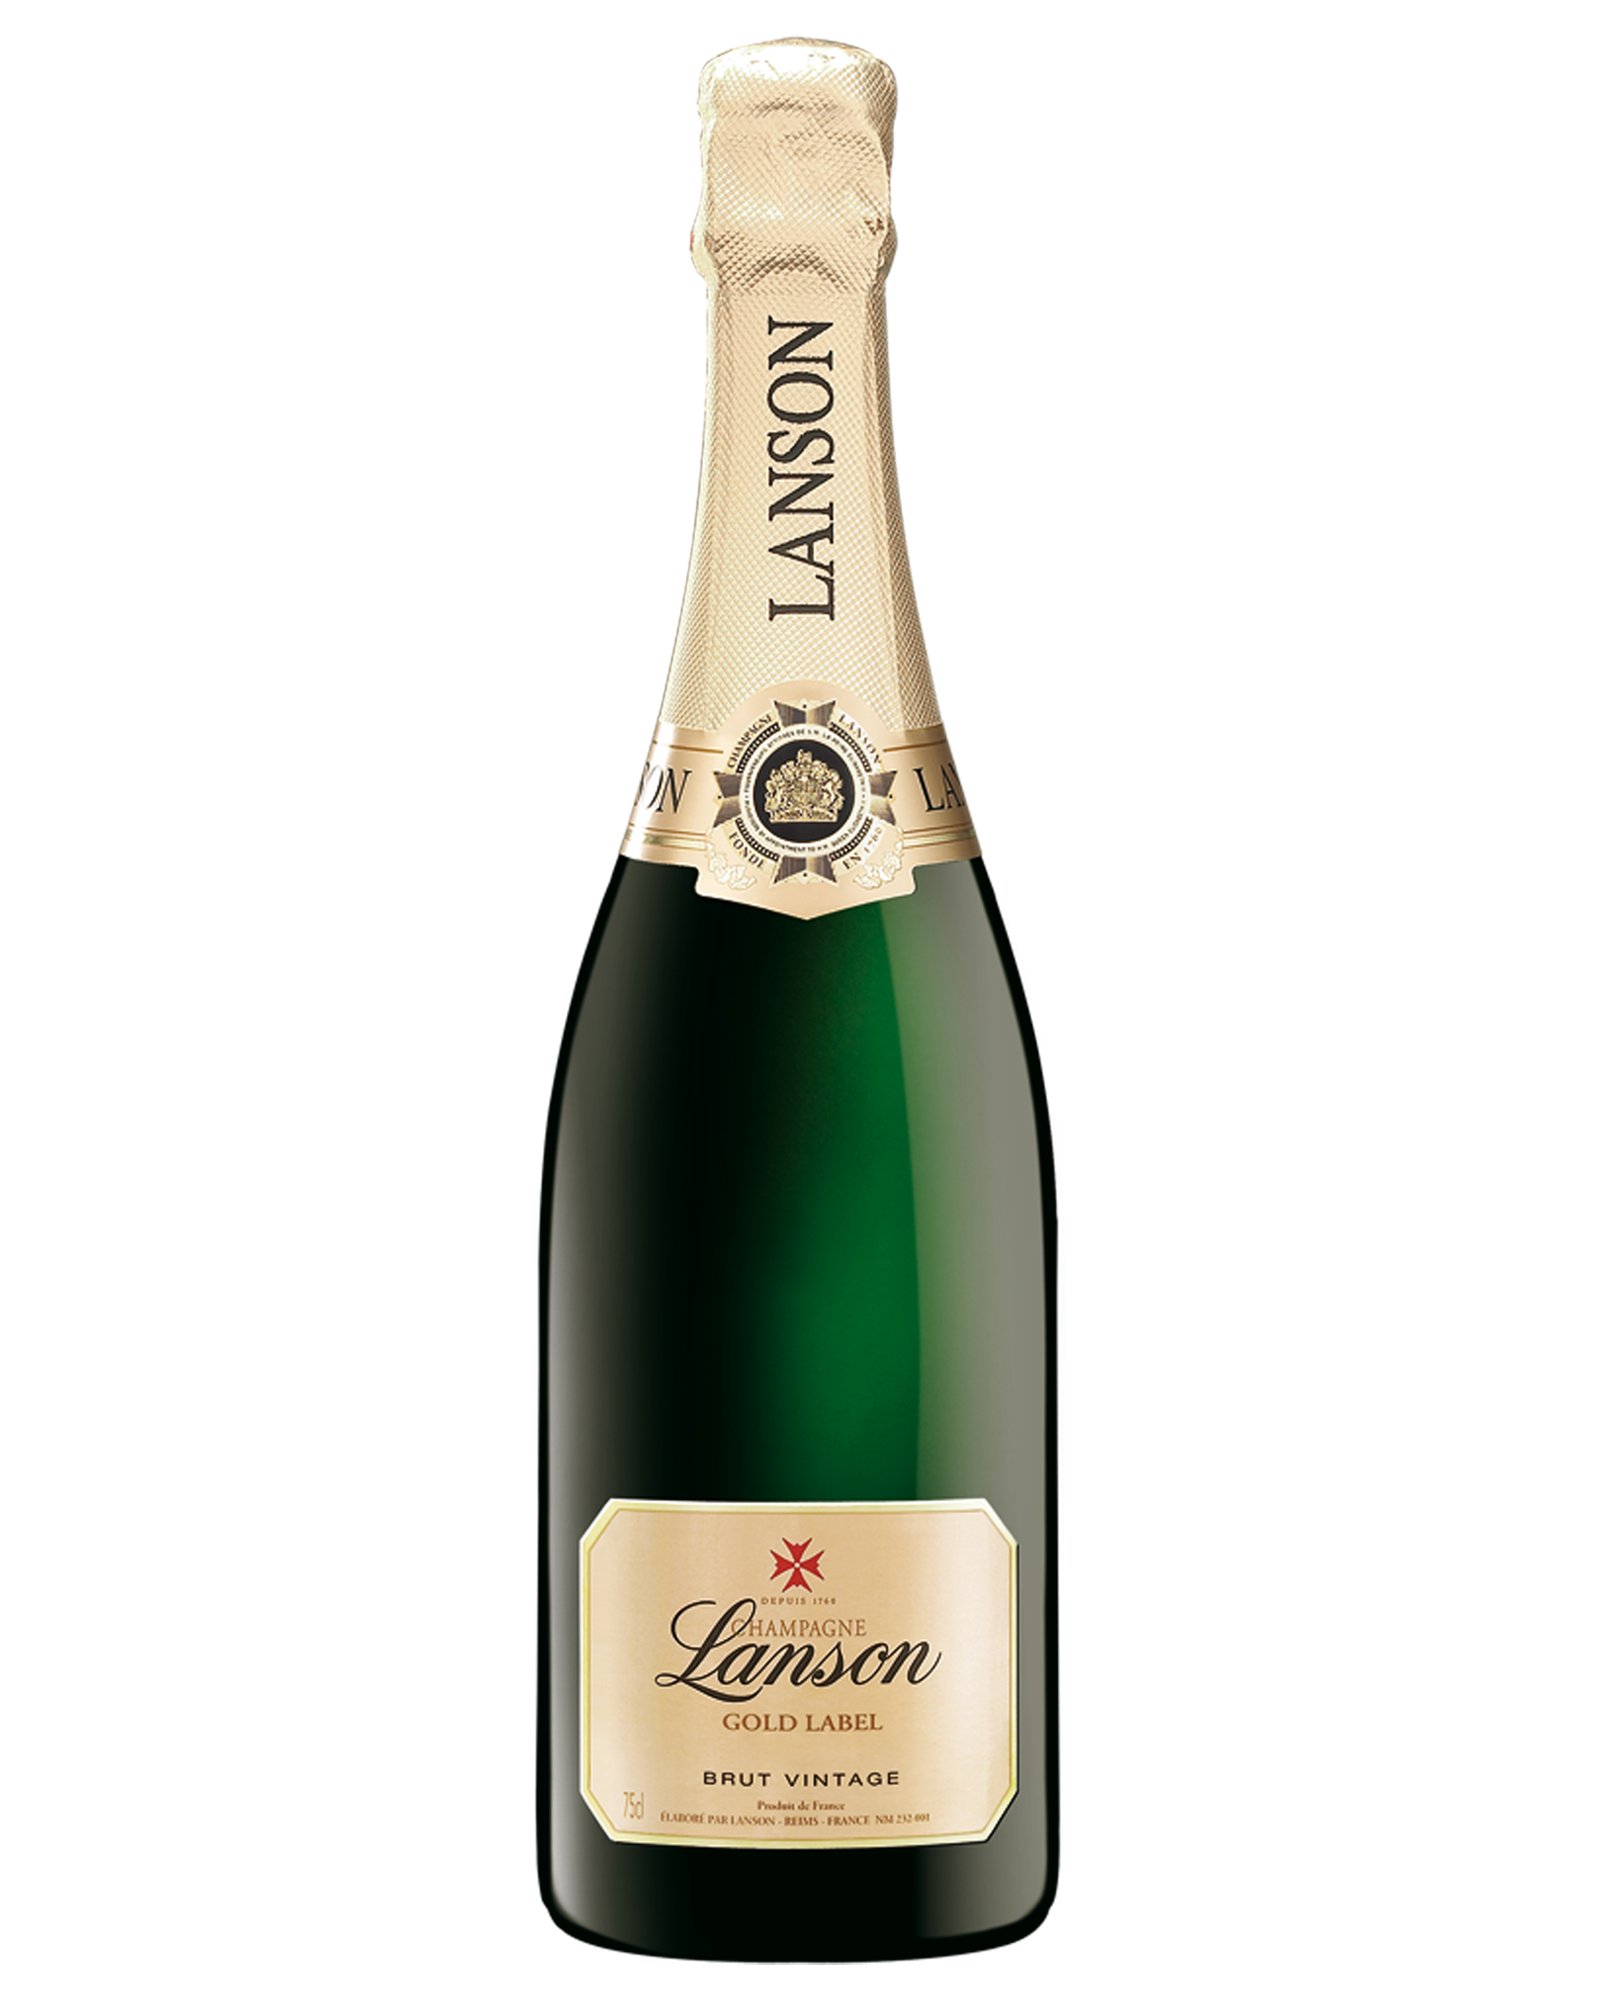 Lanson Gold Label Vintage Brut Champagne